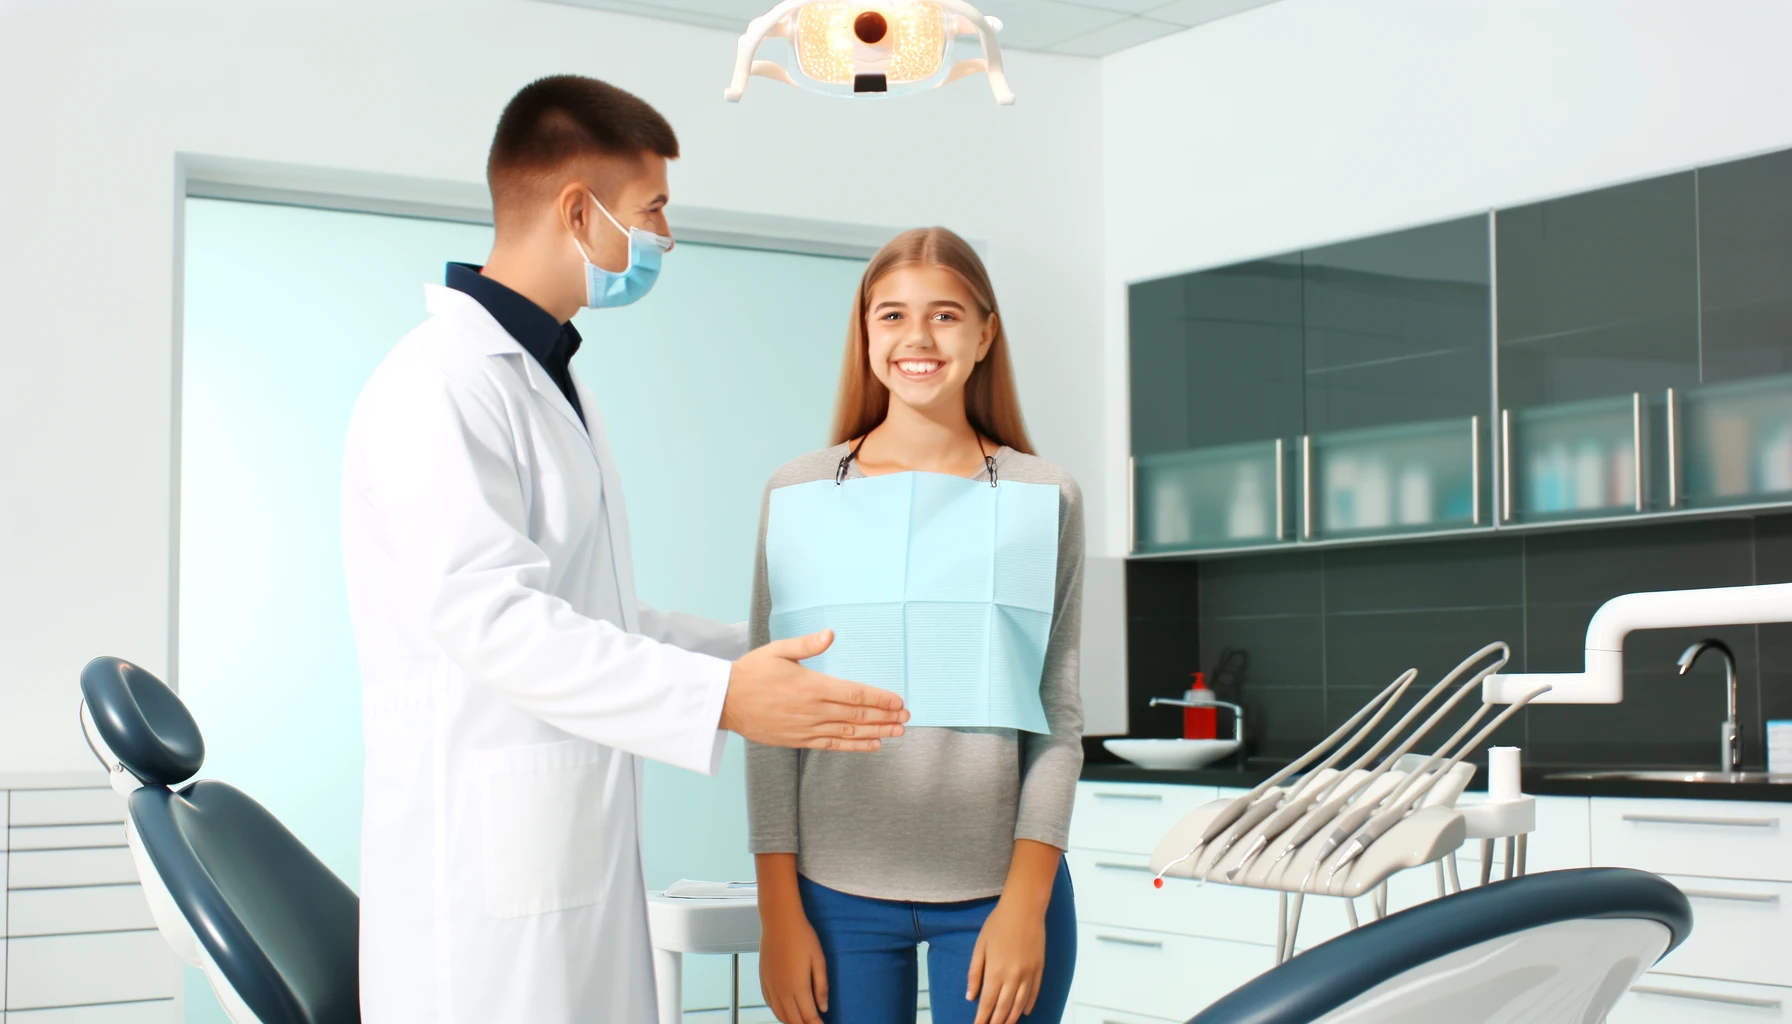 Vennlig tannlege ønsker pasient velkommen i moderne klinikk, som viser viktigheten av regelmessige tannlegebesøk